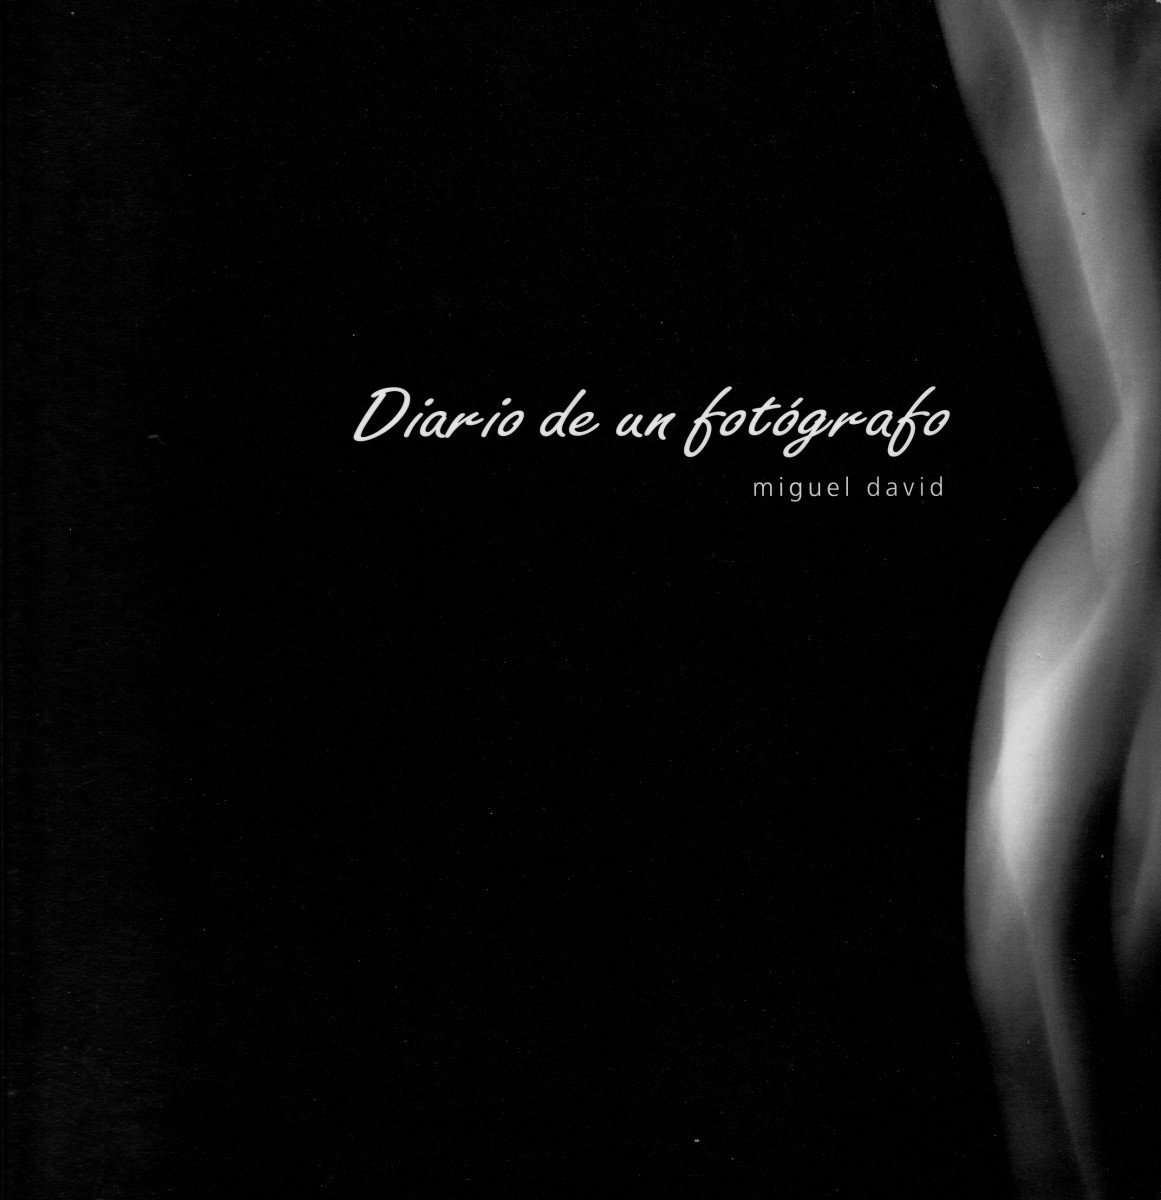 DIARIO DE UN FOTÓGRAFO - Miguel David